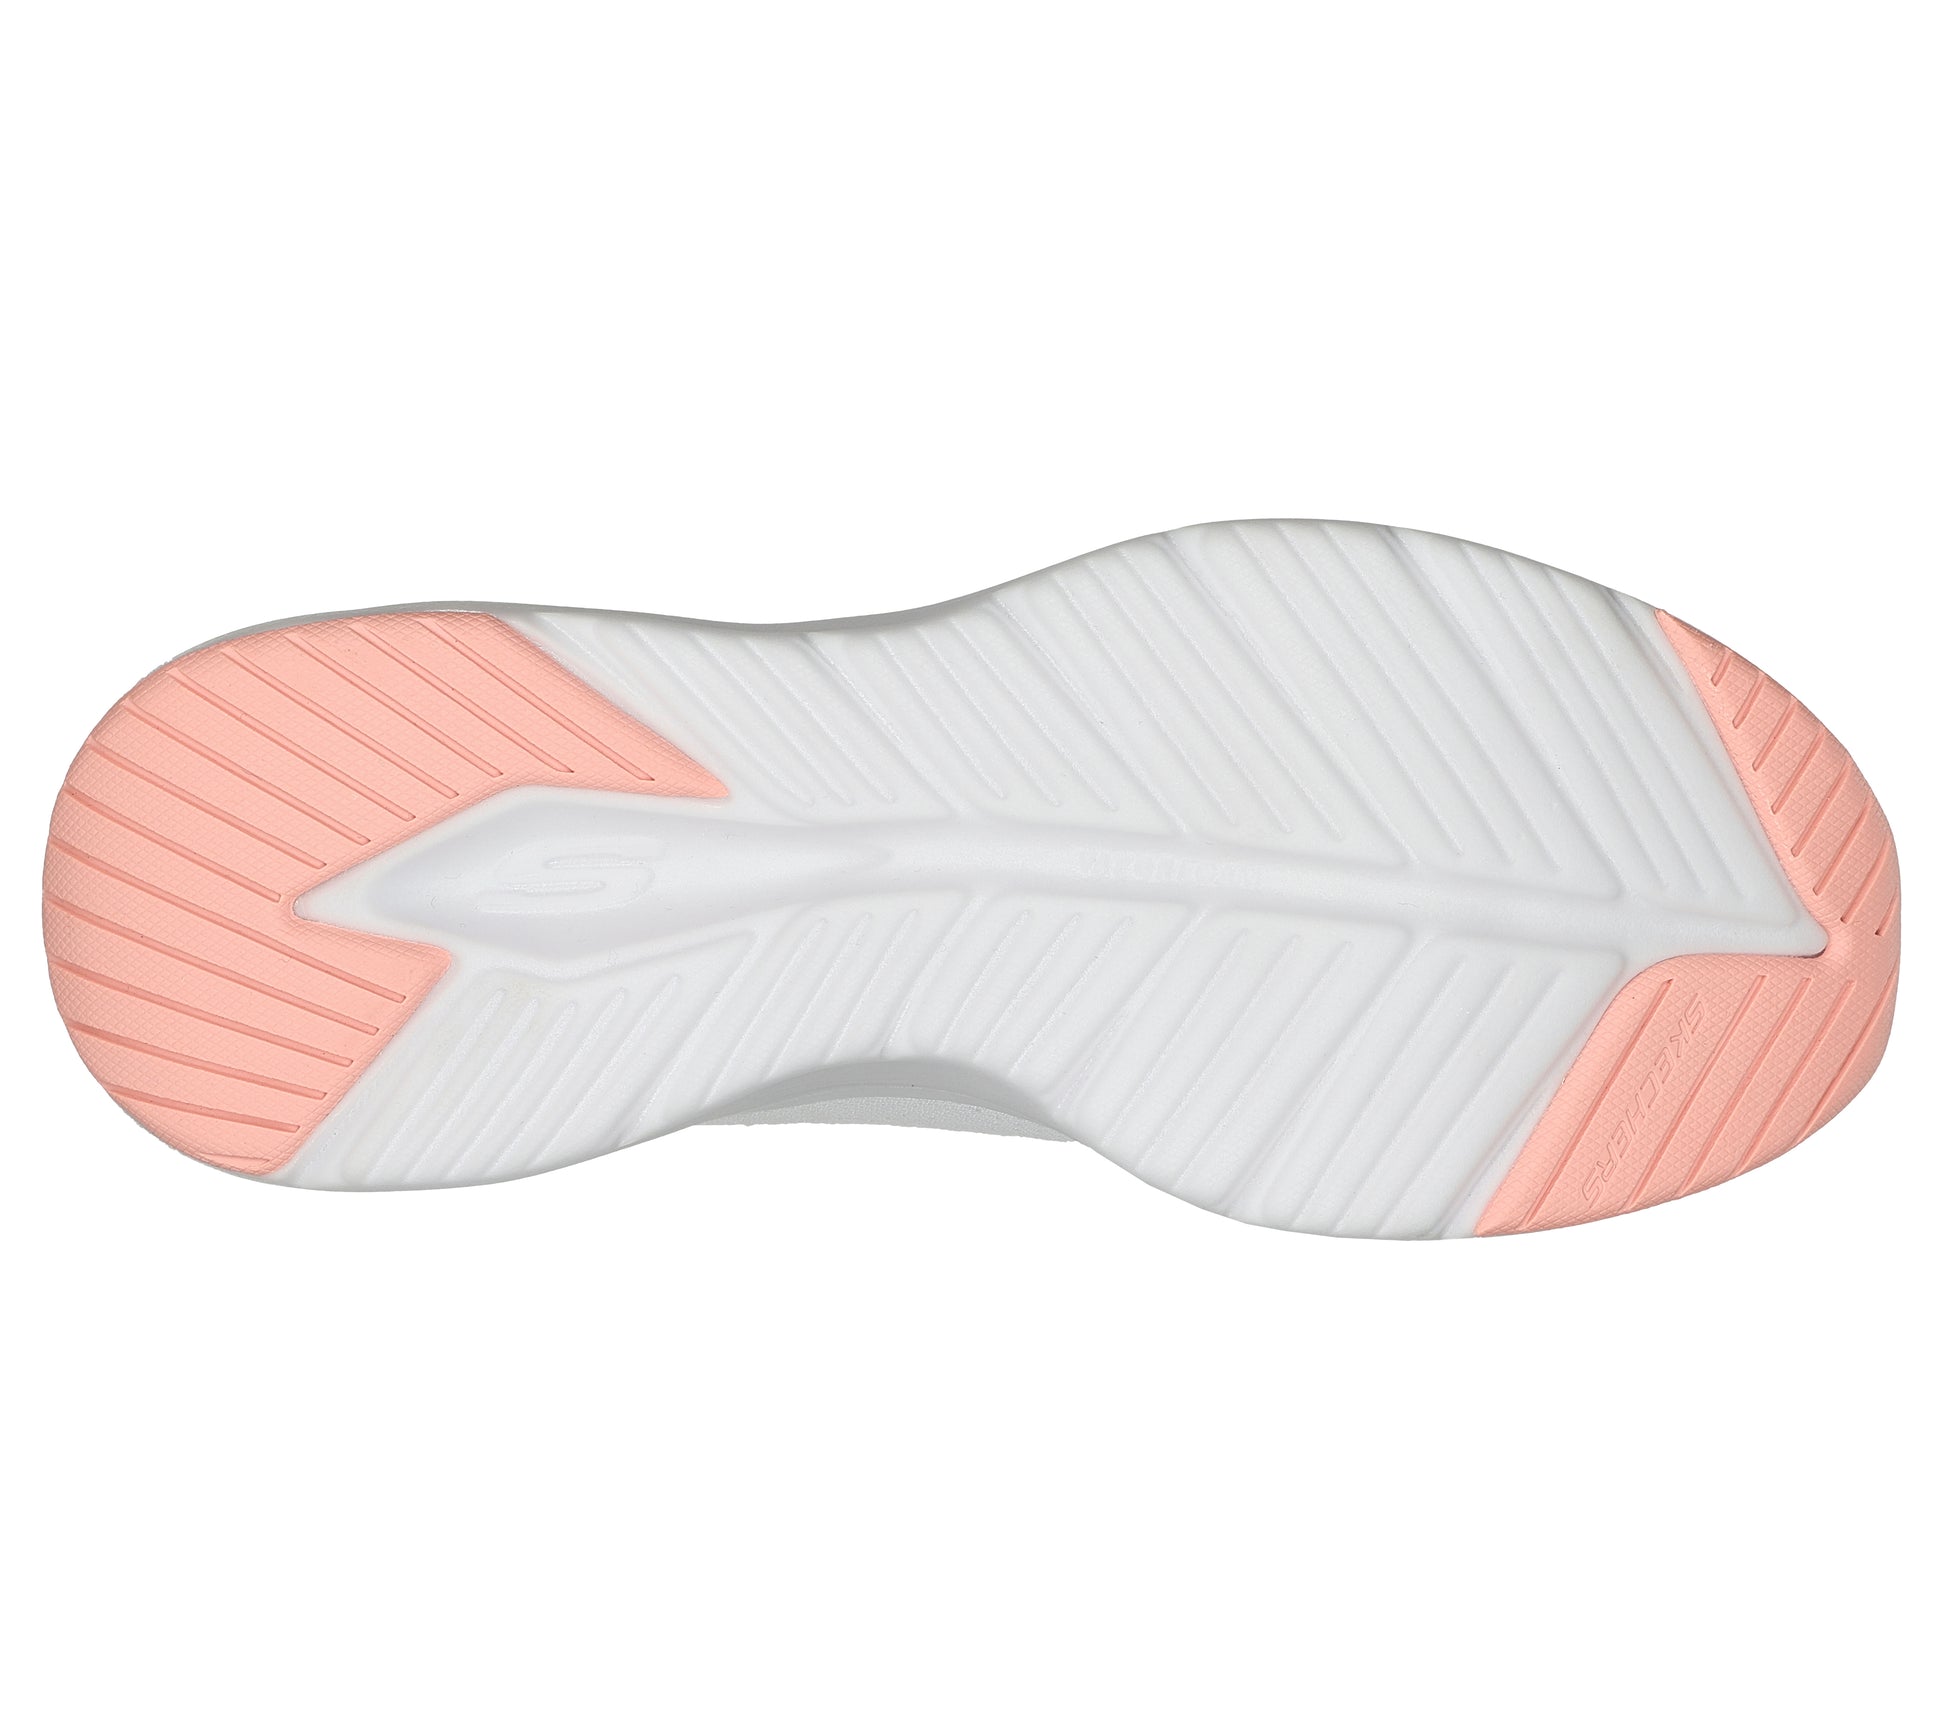 נעלי ספורט לנשים Vapor Foam - Fresh Trend בצבע לבן ורוד ושחור